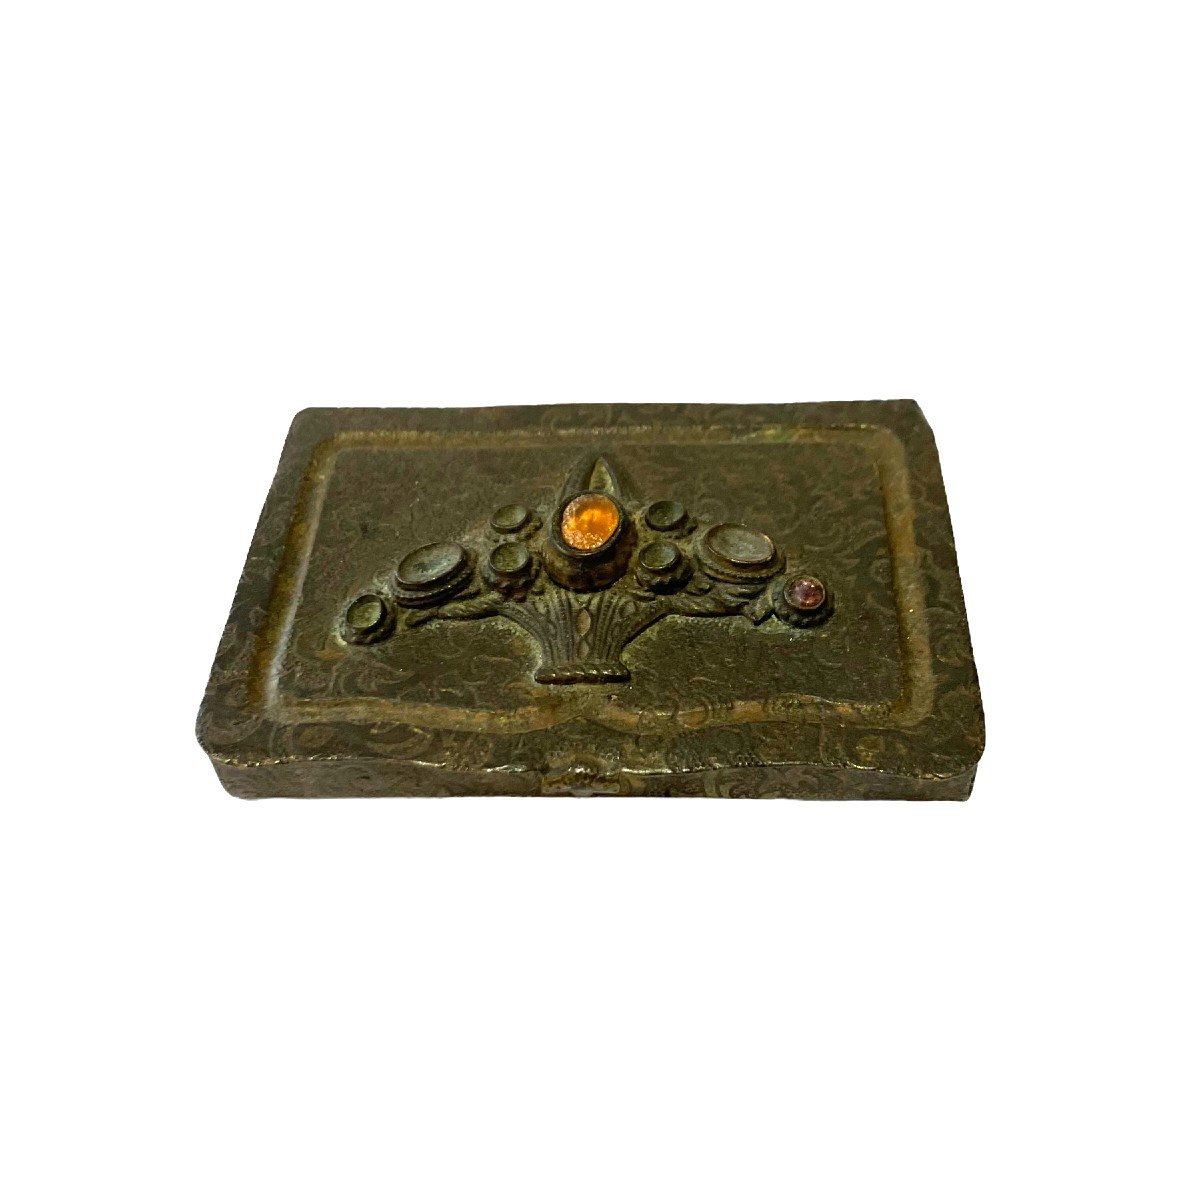 Small Art Nouveau Cigarette Box In Brass And Stones